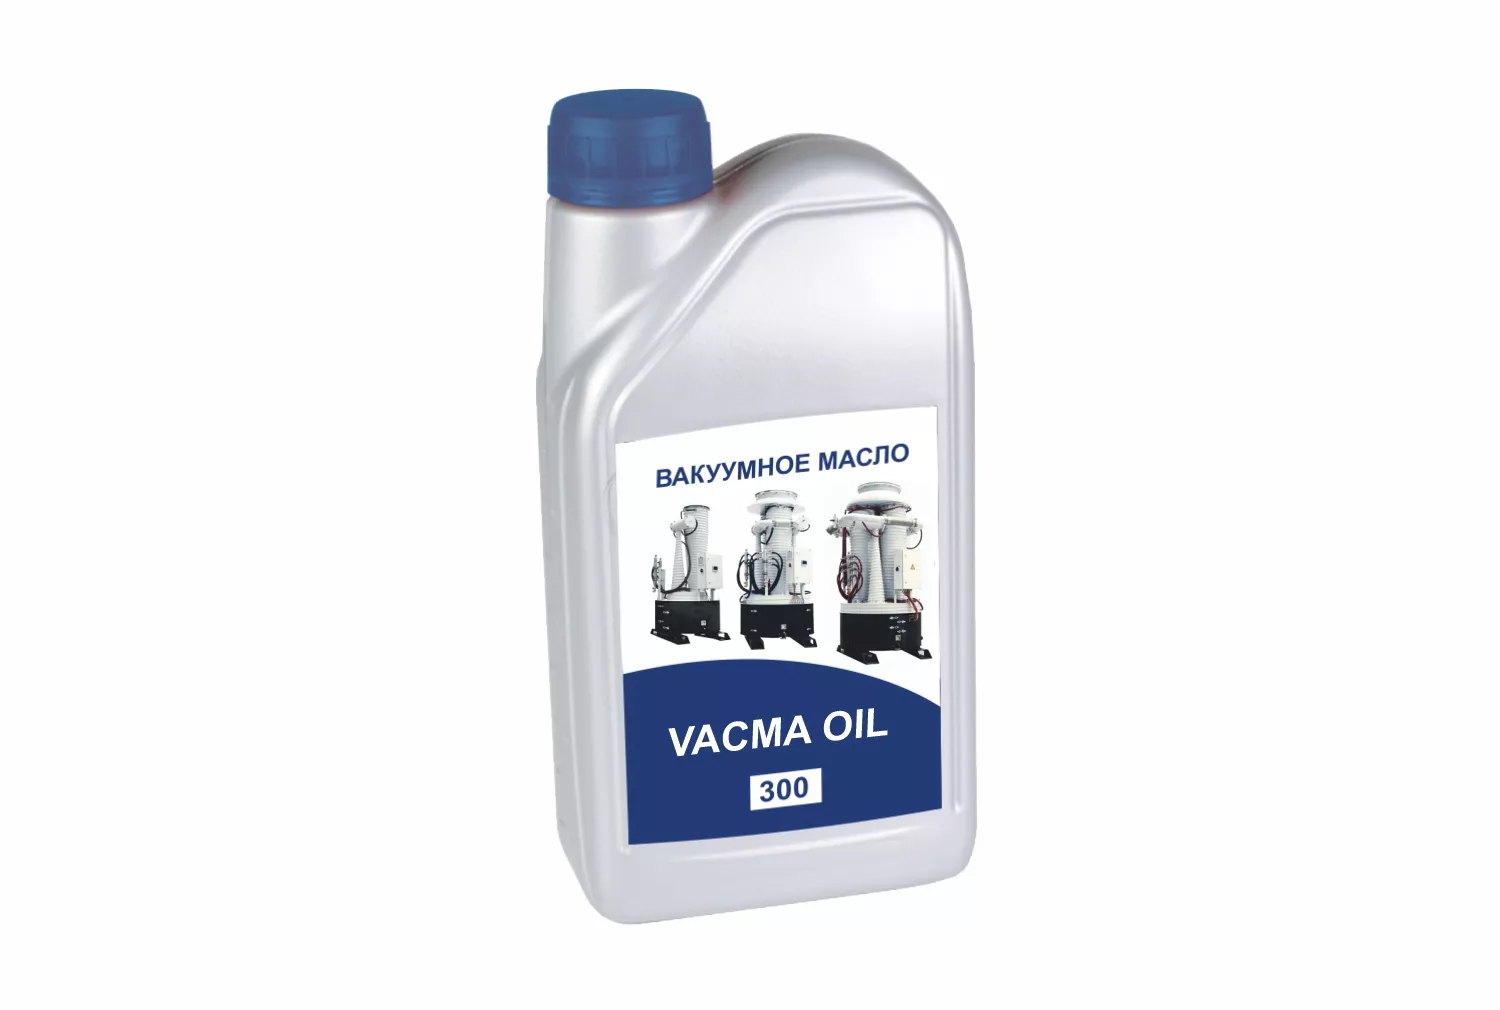 Минеральное вакуумное масло VACMA OIL 300 от производителя АО Вакууммаш